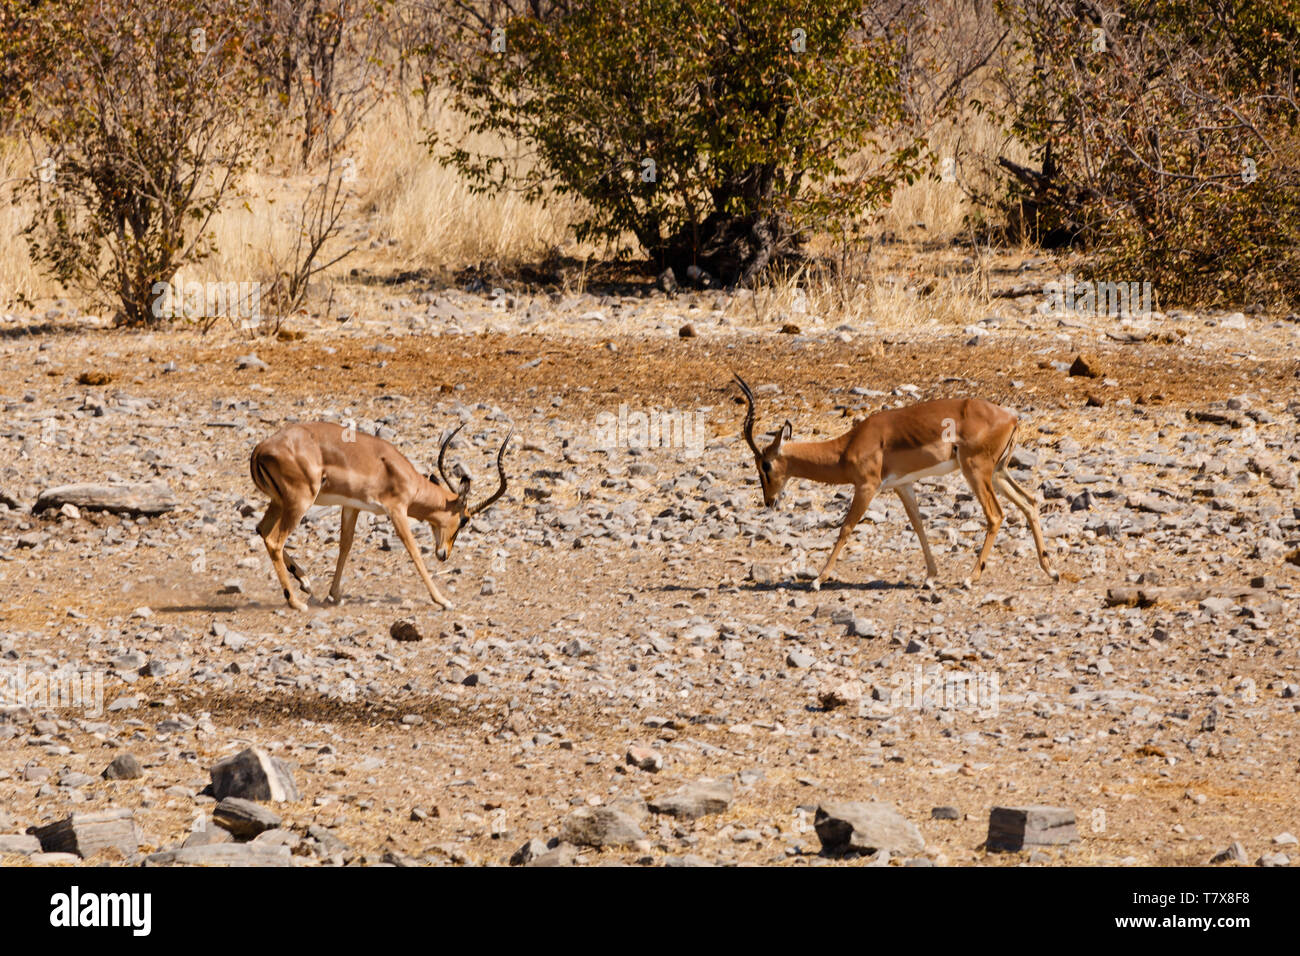 Deux hommes Les impalas se bat pour obtenir le droit de s'accoupler avec les femelles du troupeau Banque D'Images